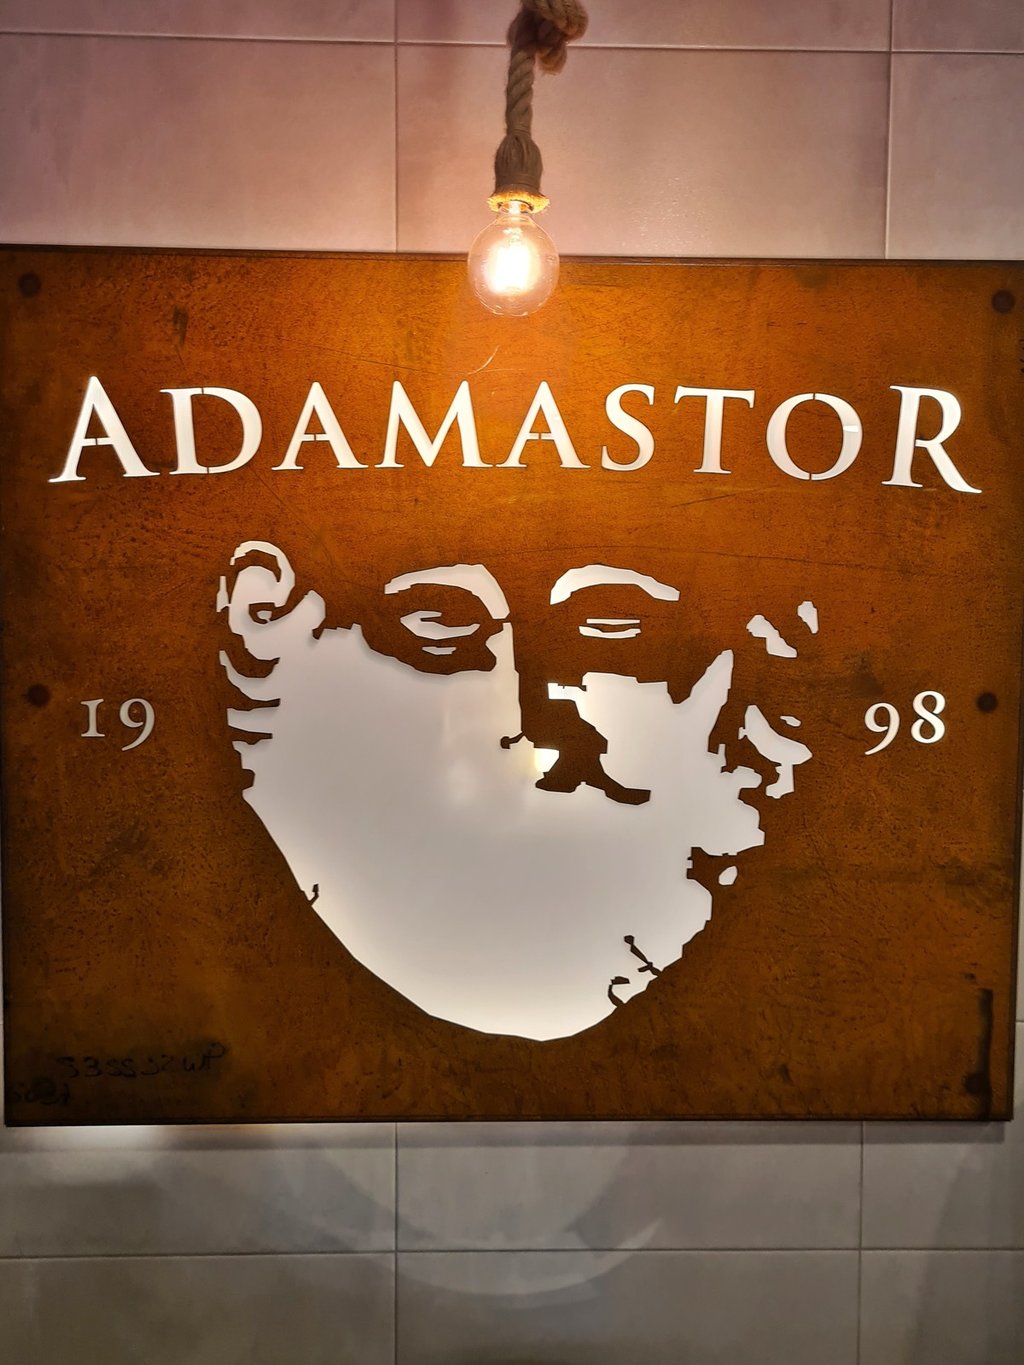 AdamastoR - Cervejaria do Povo, Lda